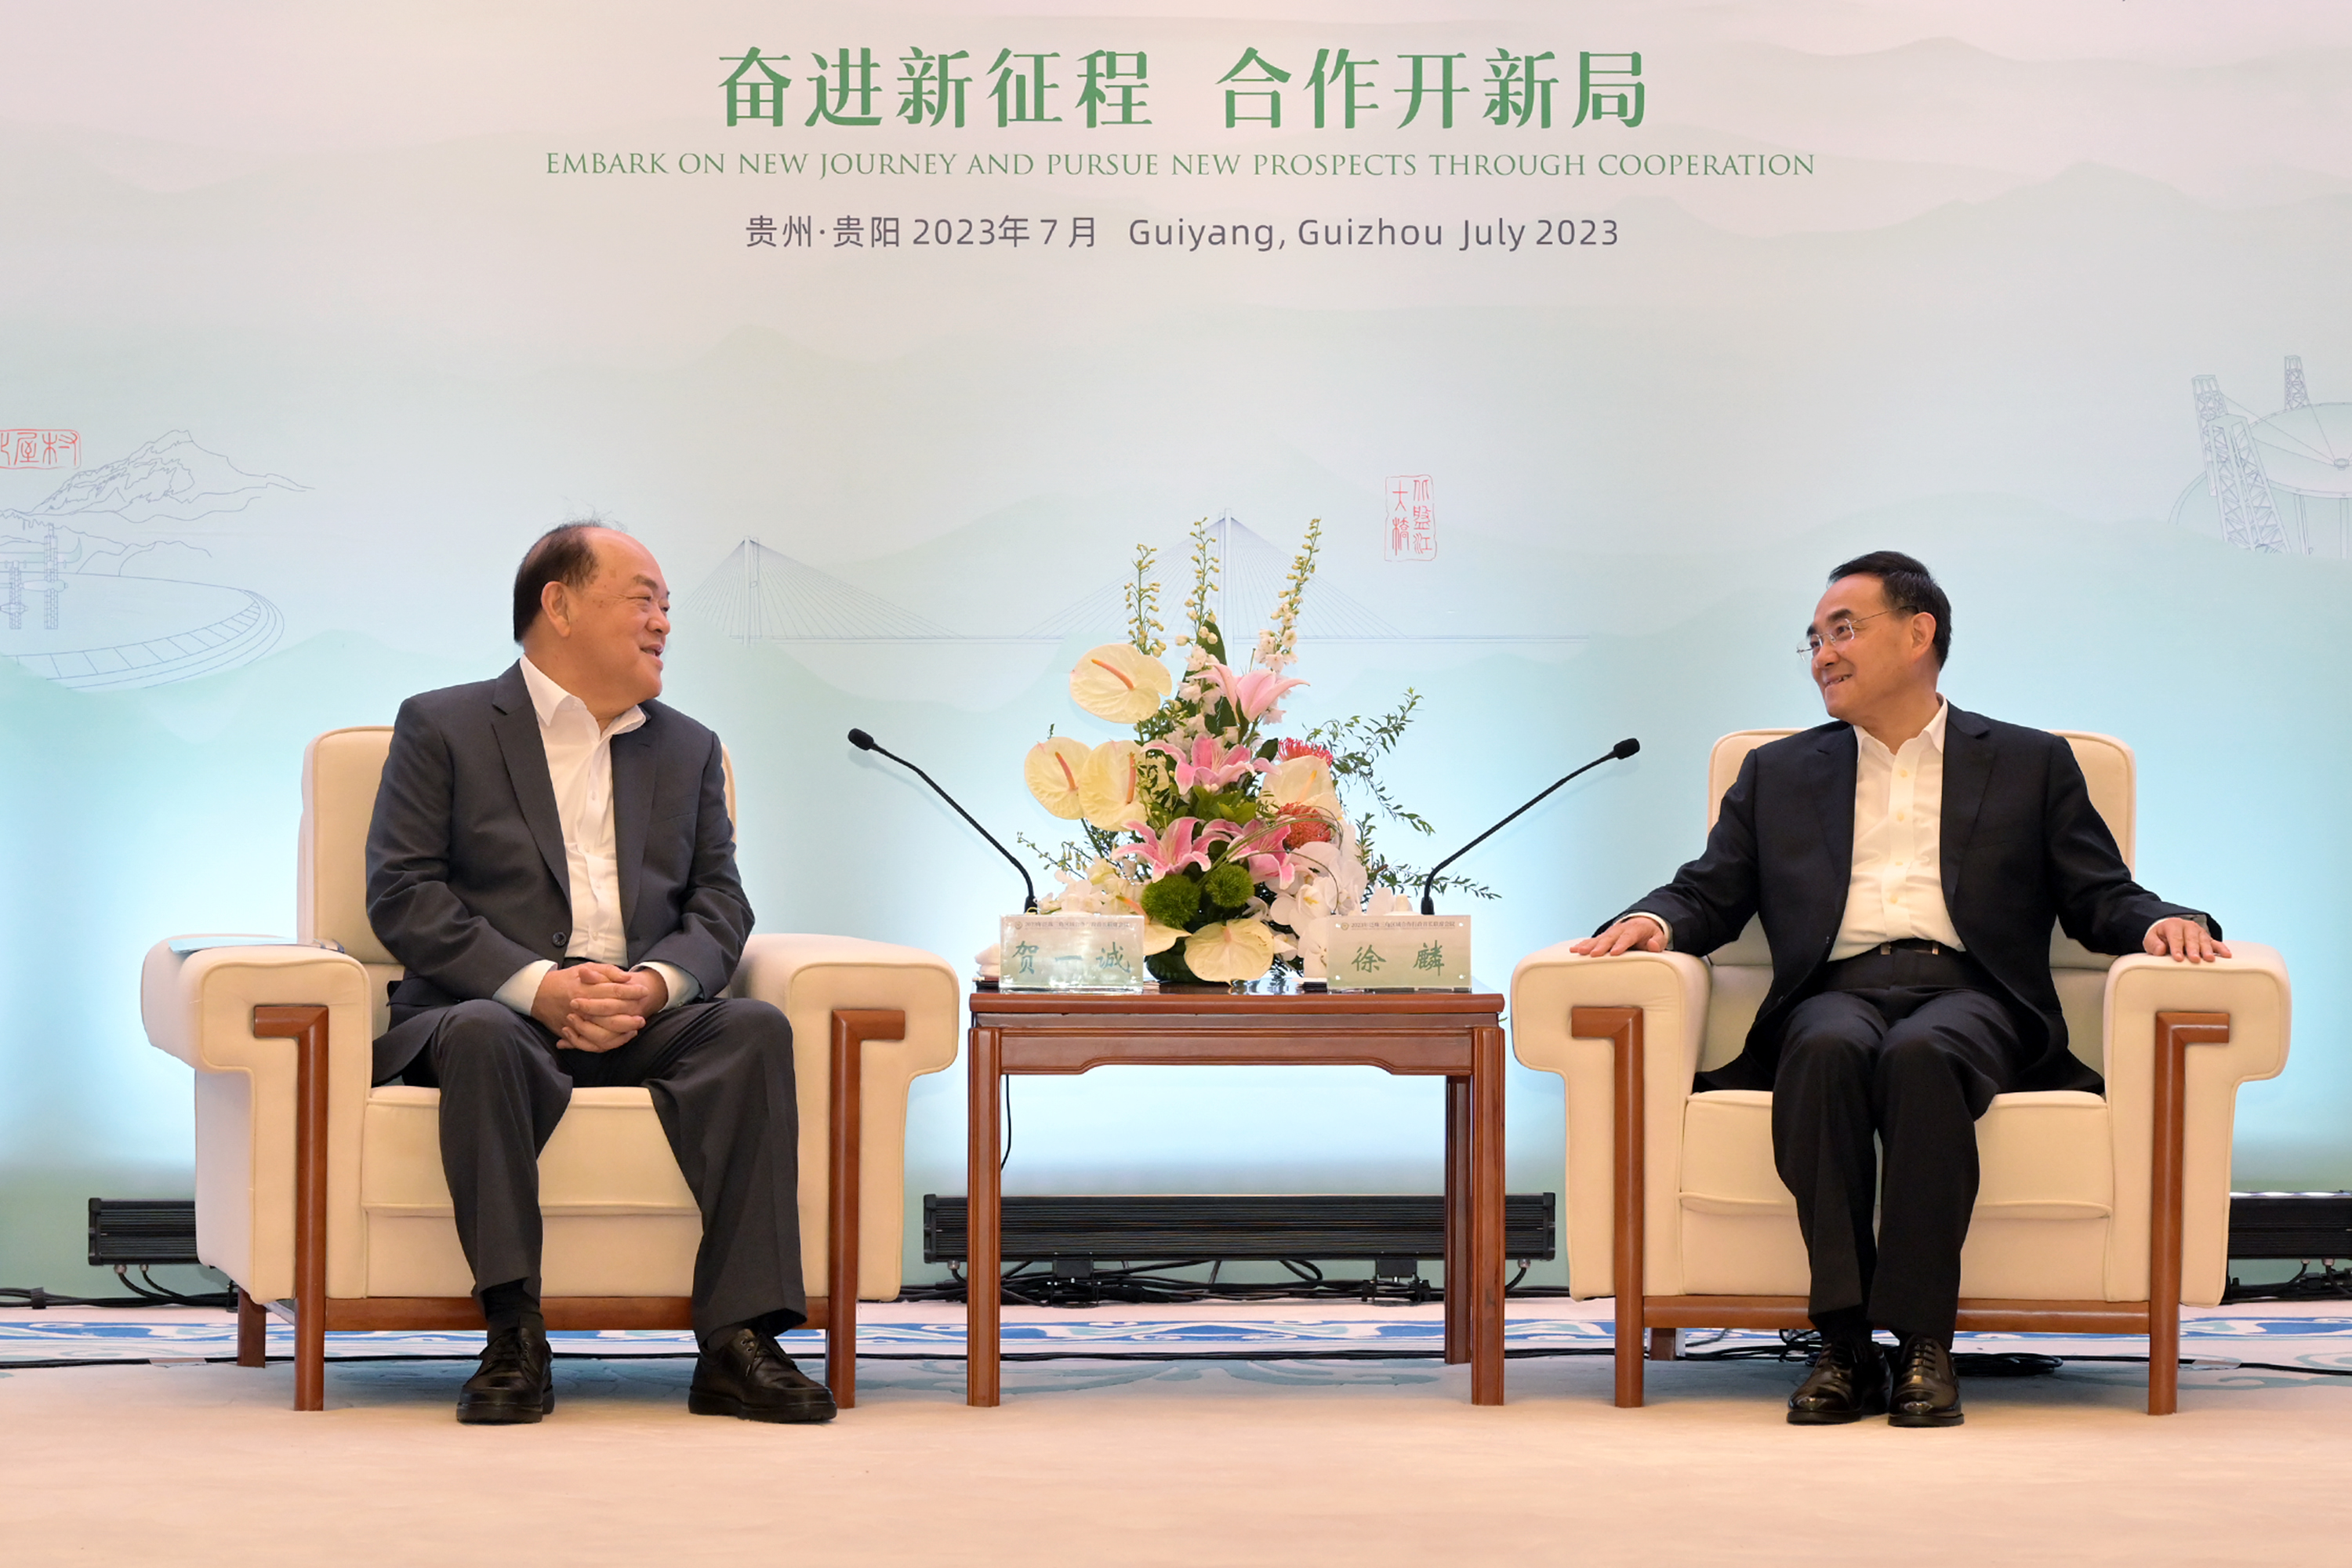 Ho Iat Seng visita Guizhou para fortalecer las asociaciones en el delta del río Perla